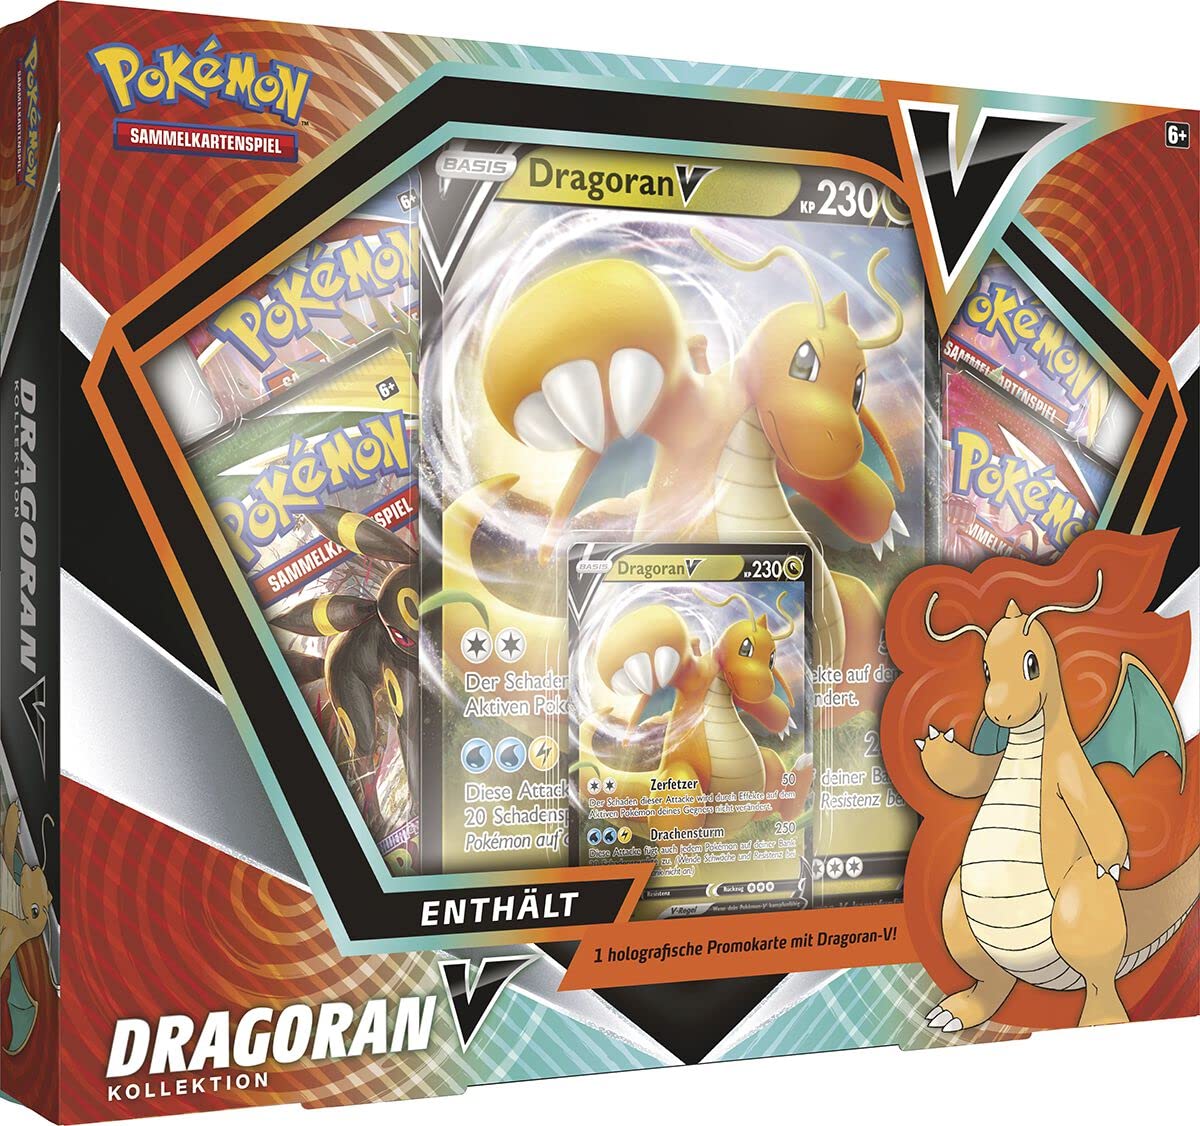 Pokémon Dragoran-V Kollektion (Sammelkartenspiel)